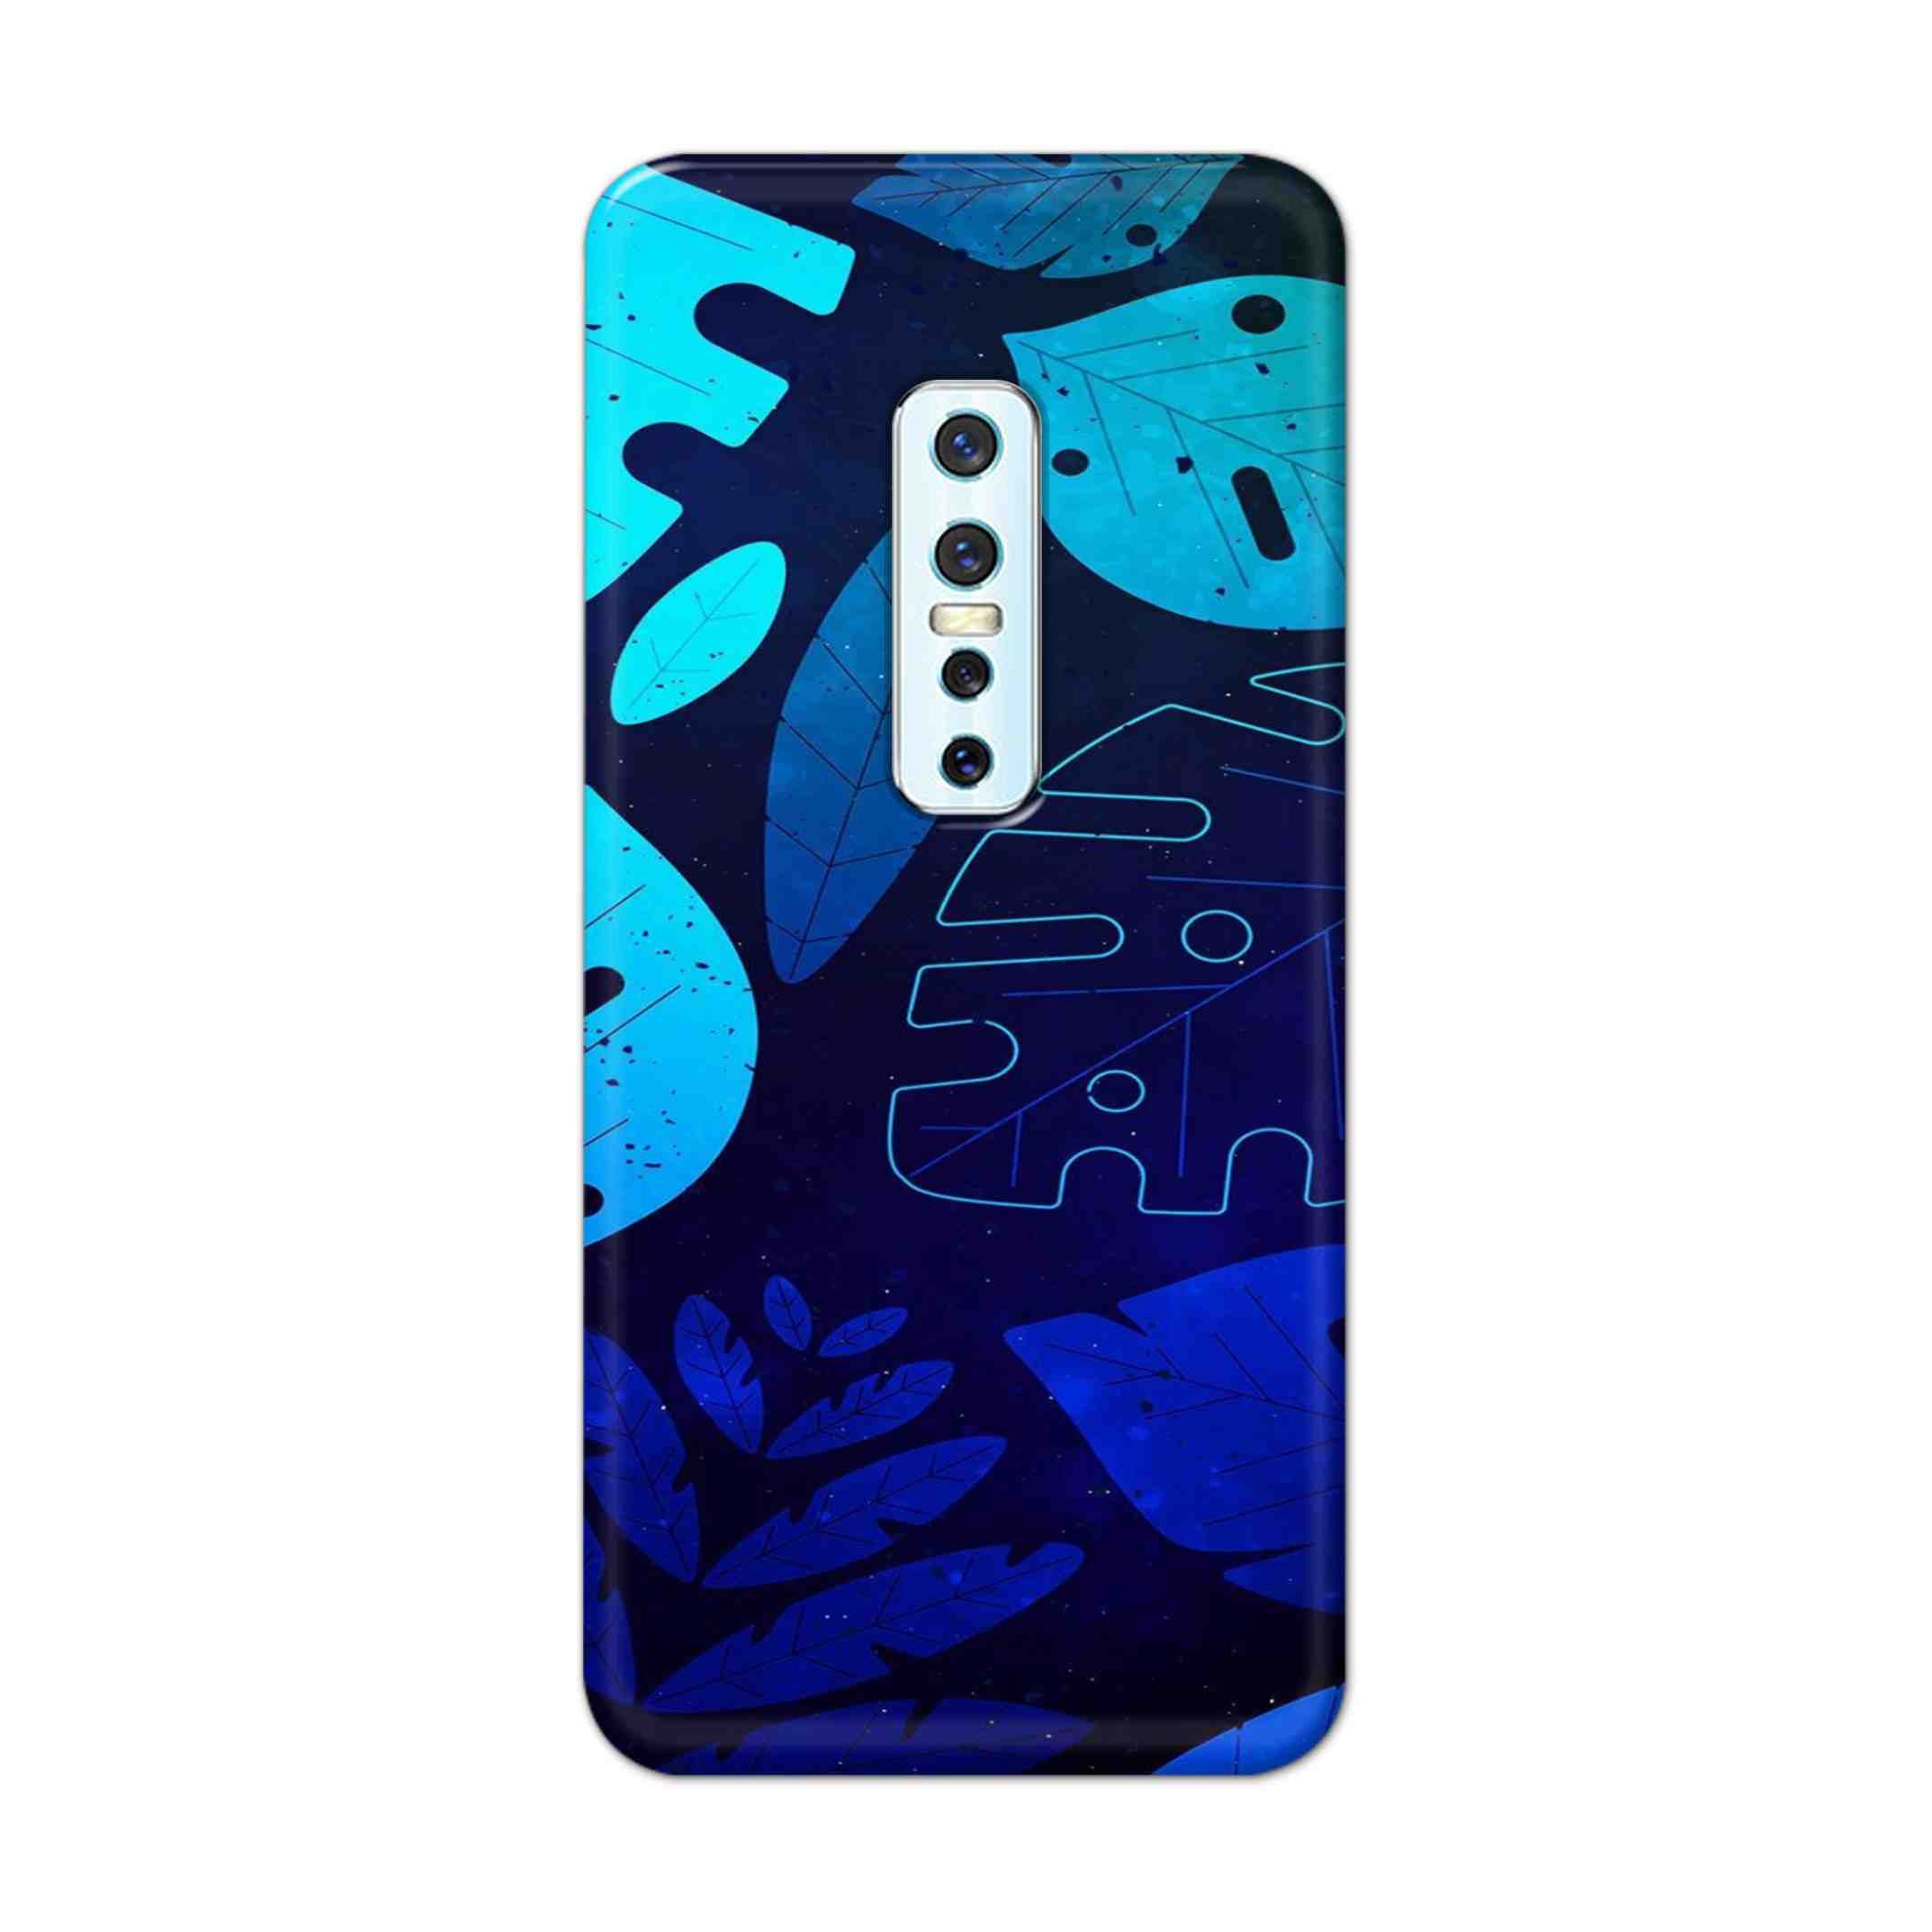 Buy Neon Leaf Hard Back Mobile Phone Case Cover For Vivo V17 Pro Online